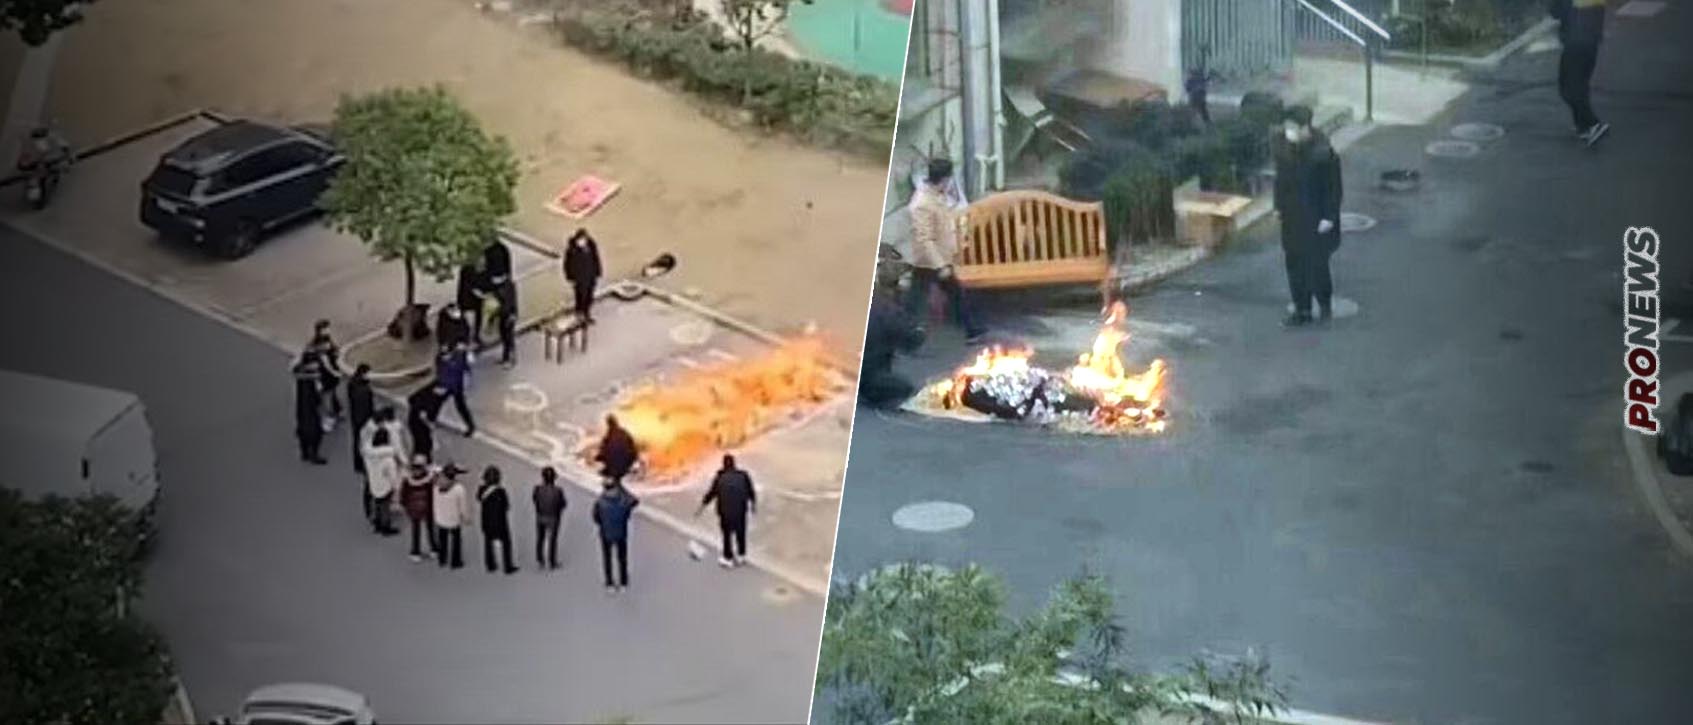 Συγκλονιστικές εικόνες στην Κίνα: Καίνε νεκρούς ακόμα και στους δρόμους (βίντεο)